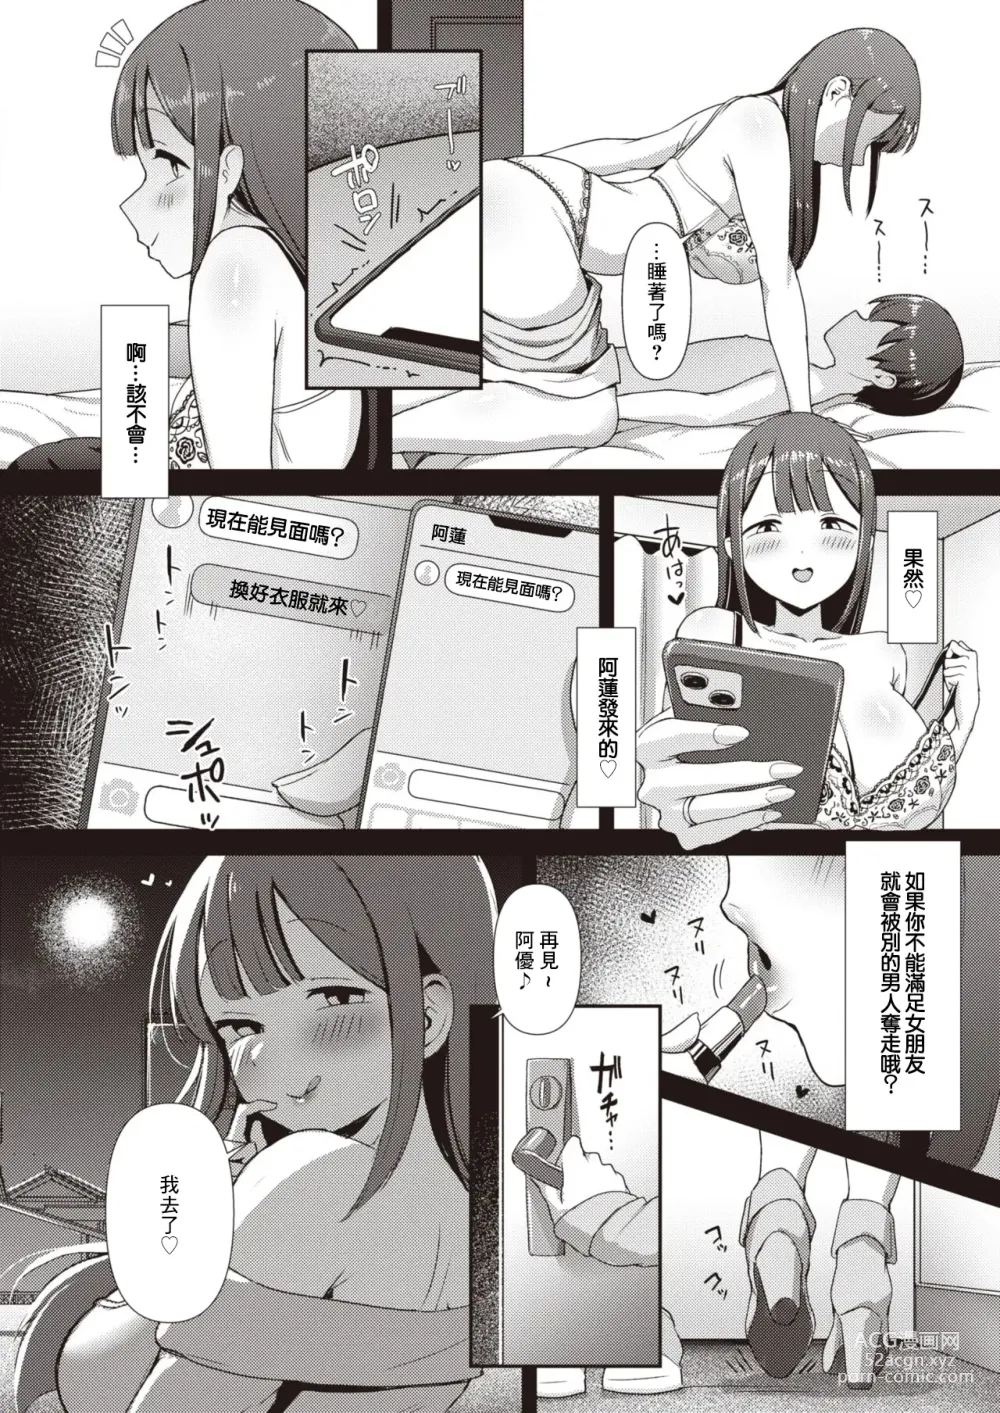 Page 7 of manga Minori-chan ~Kareshi ga Inai to Dame Nandesu~